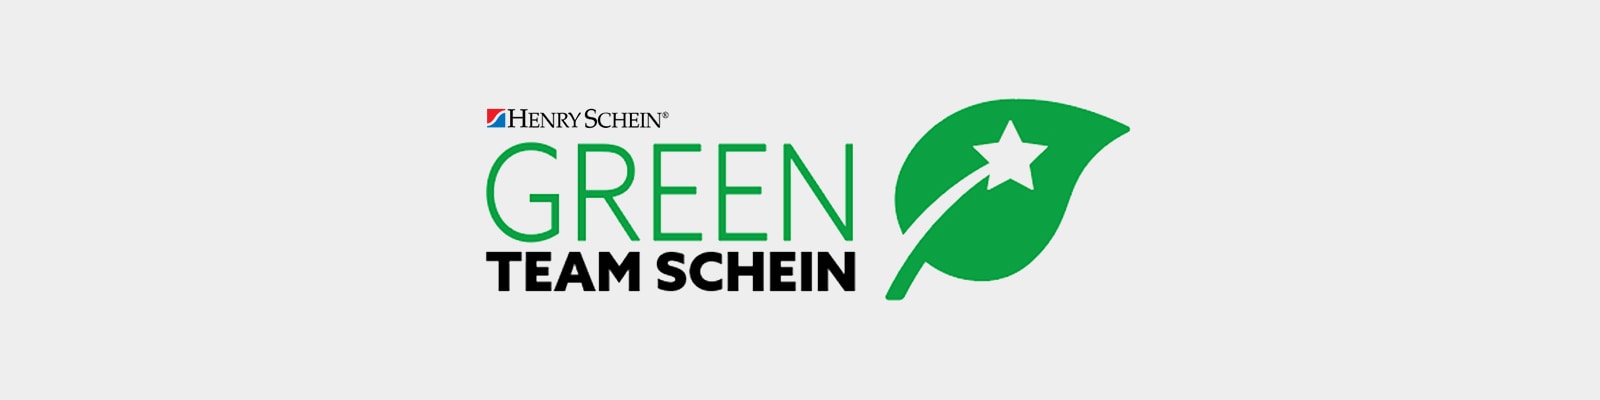 Henry Schein Green Team Schein